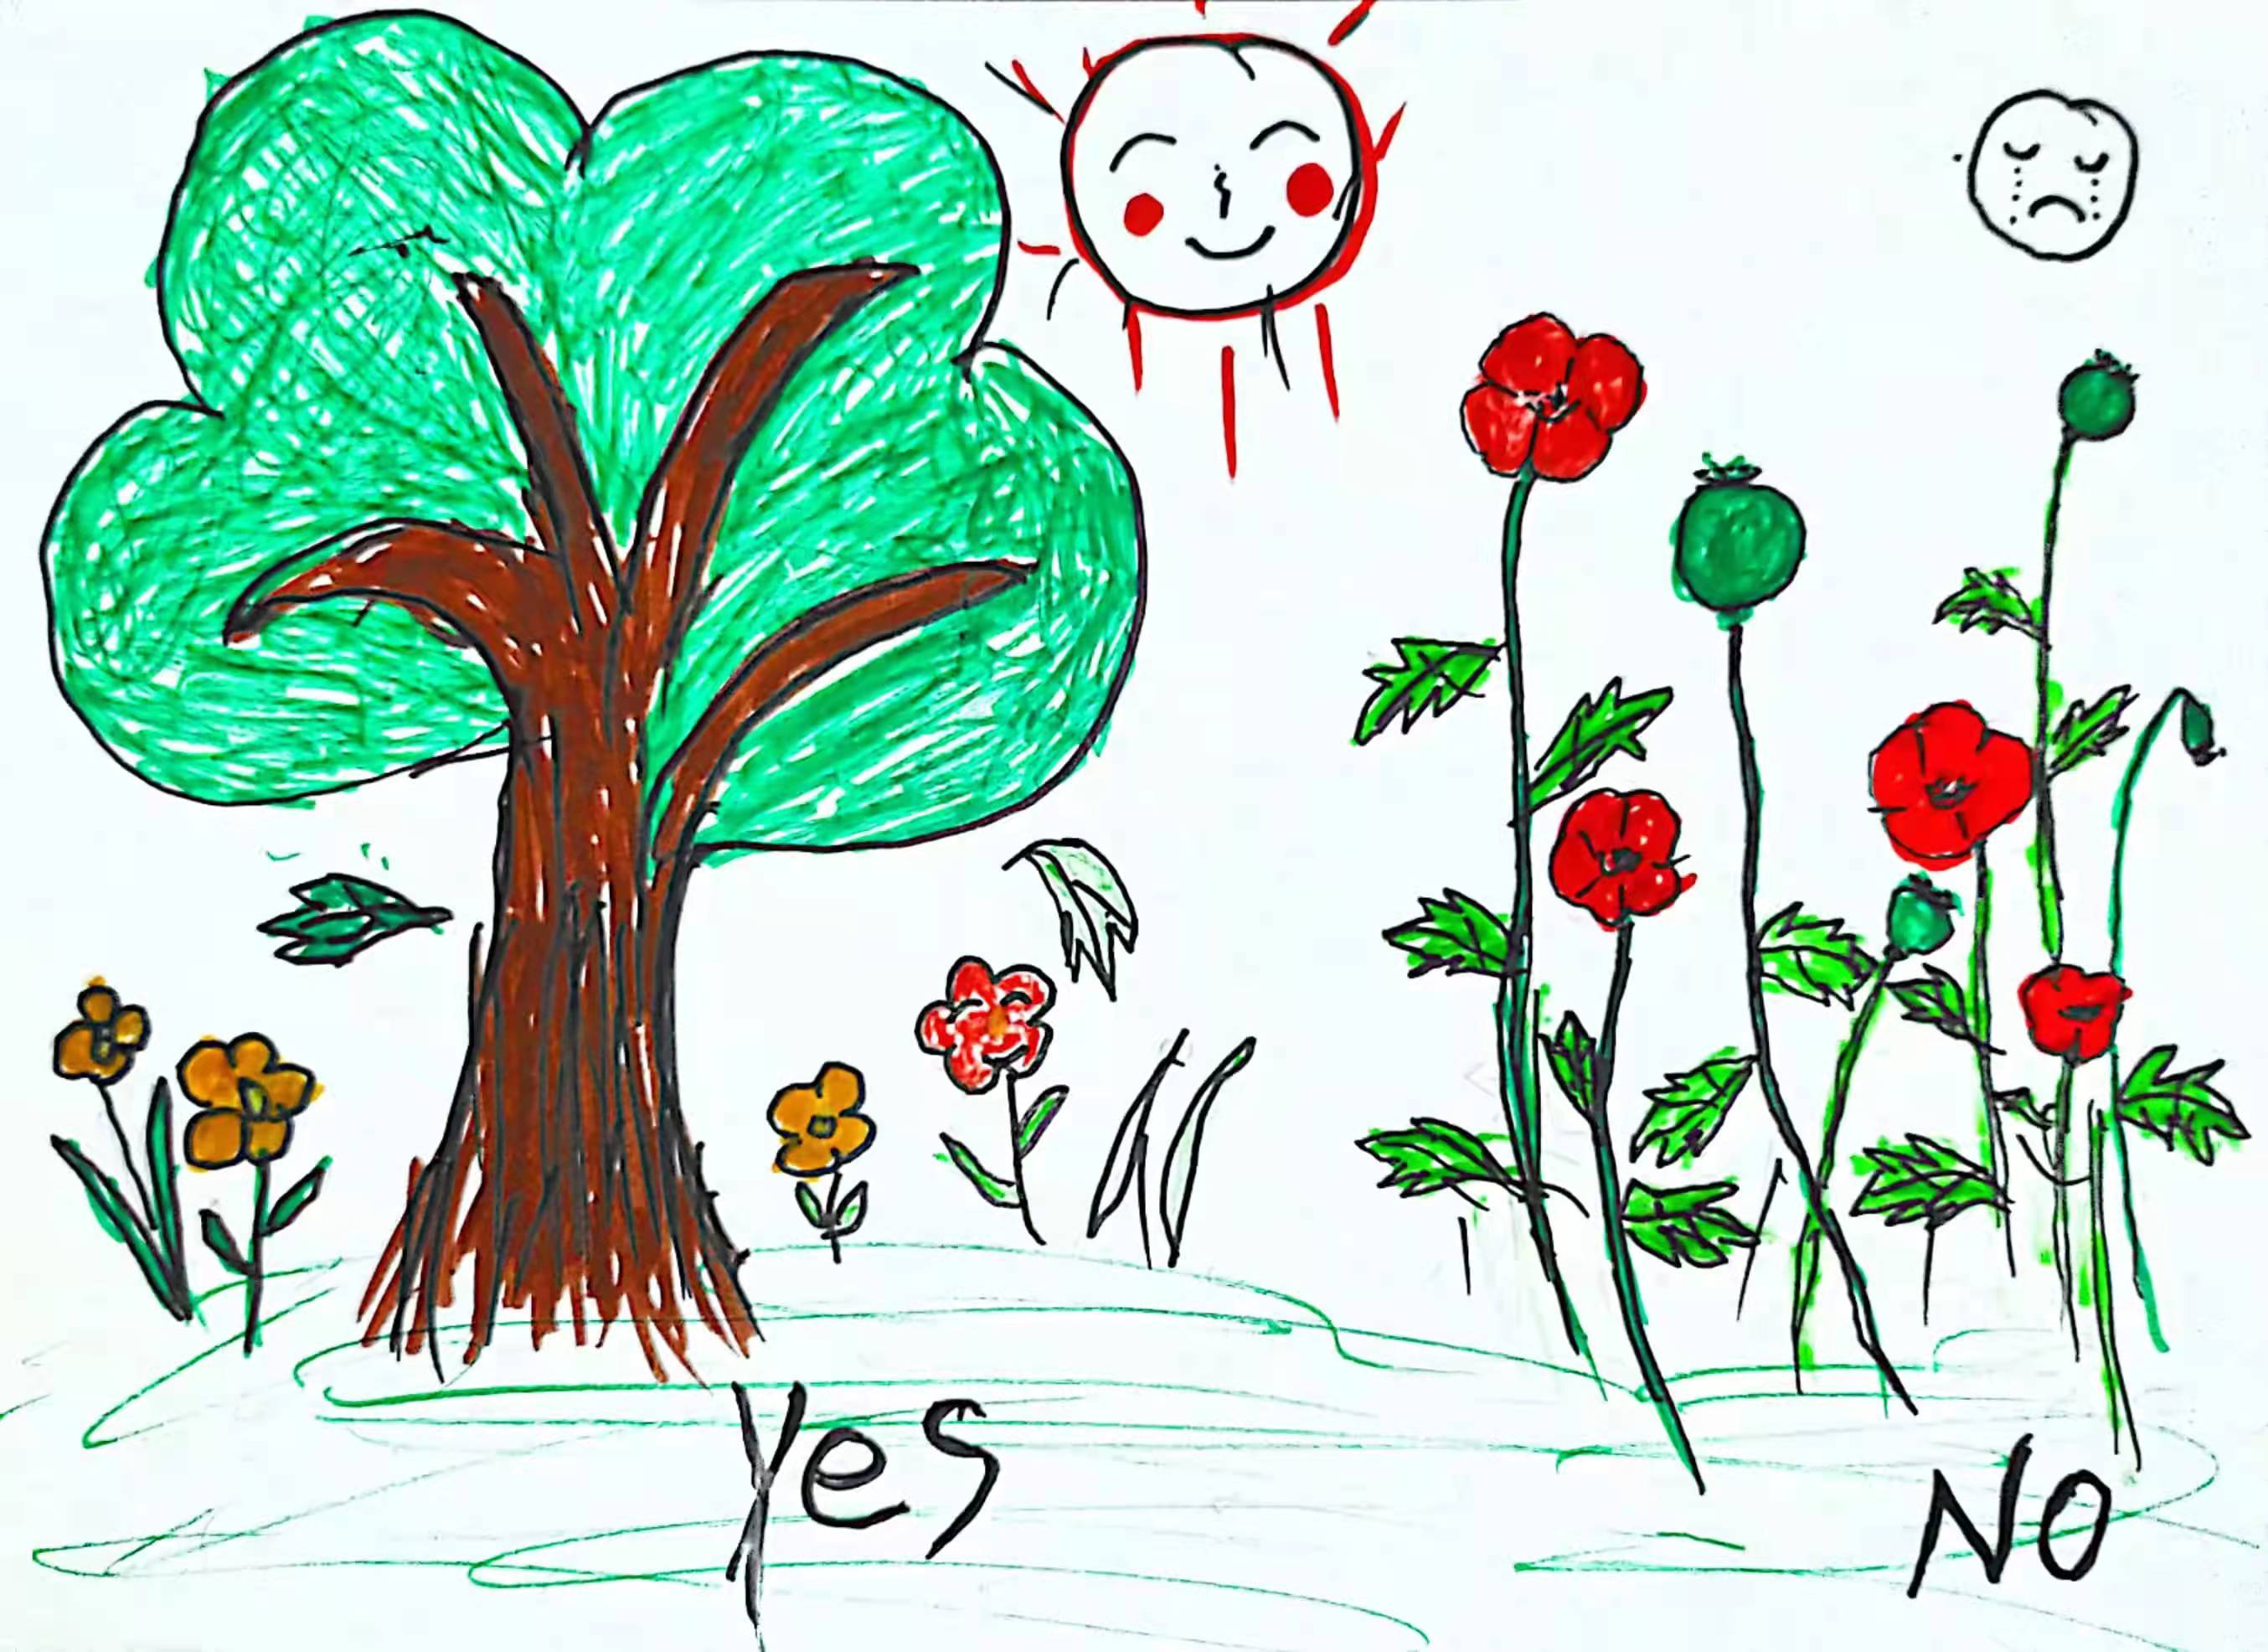 种树不种毒,健康享人生——黄贝街道线上绘画活动